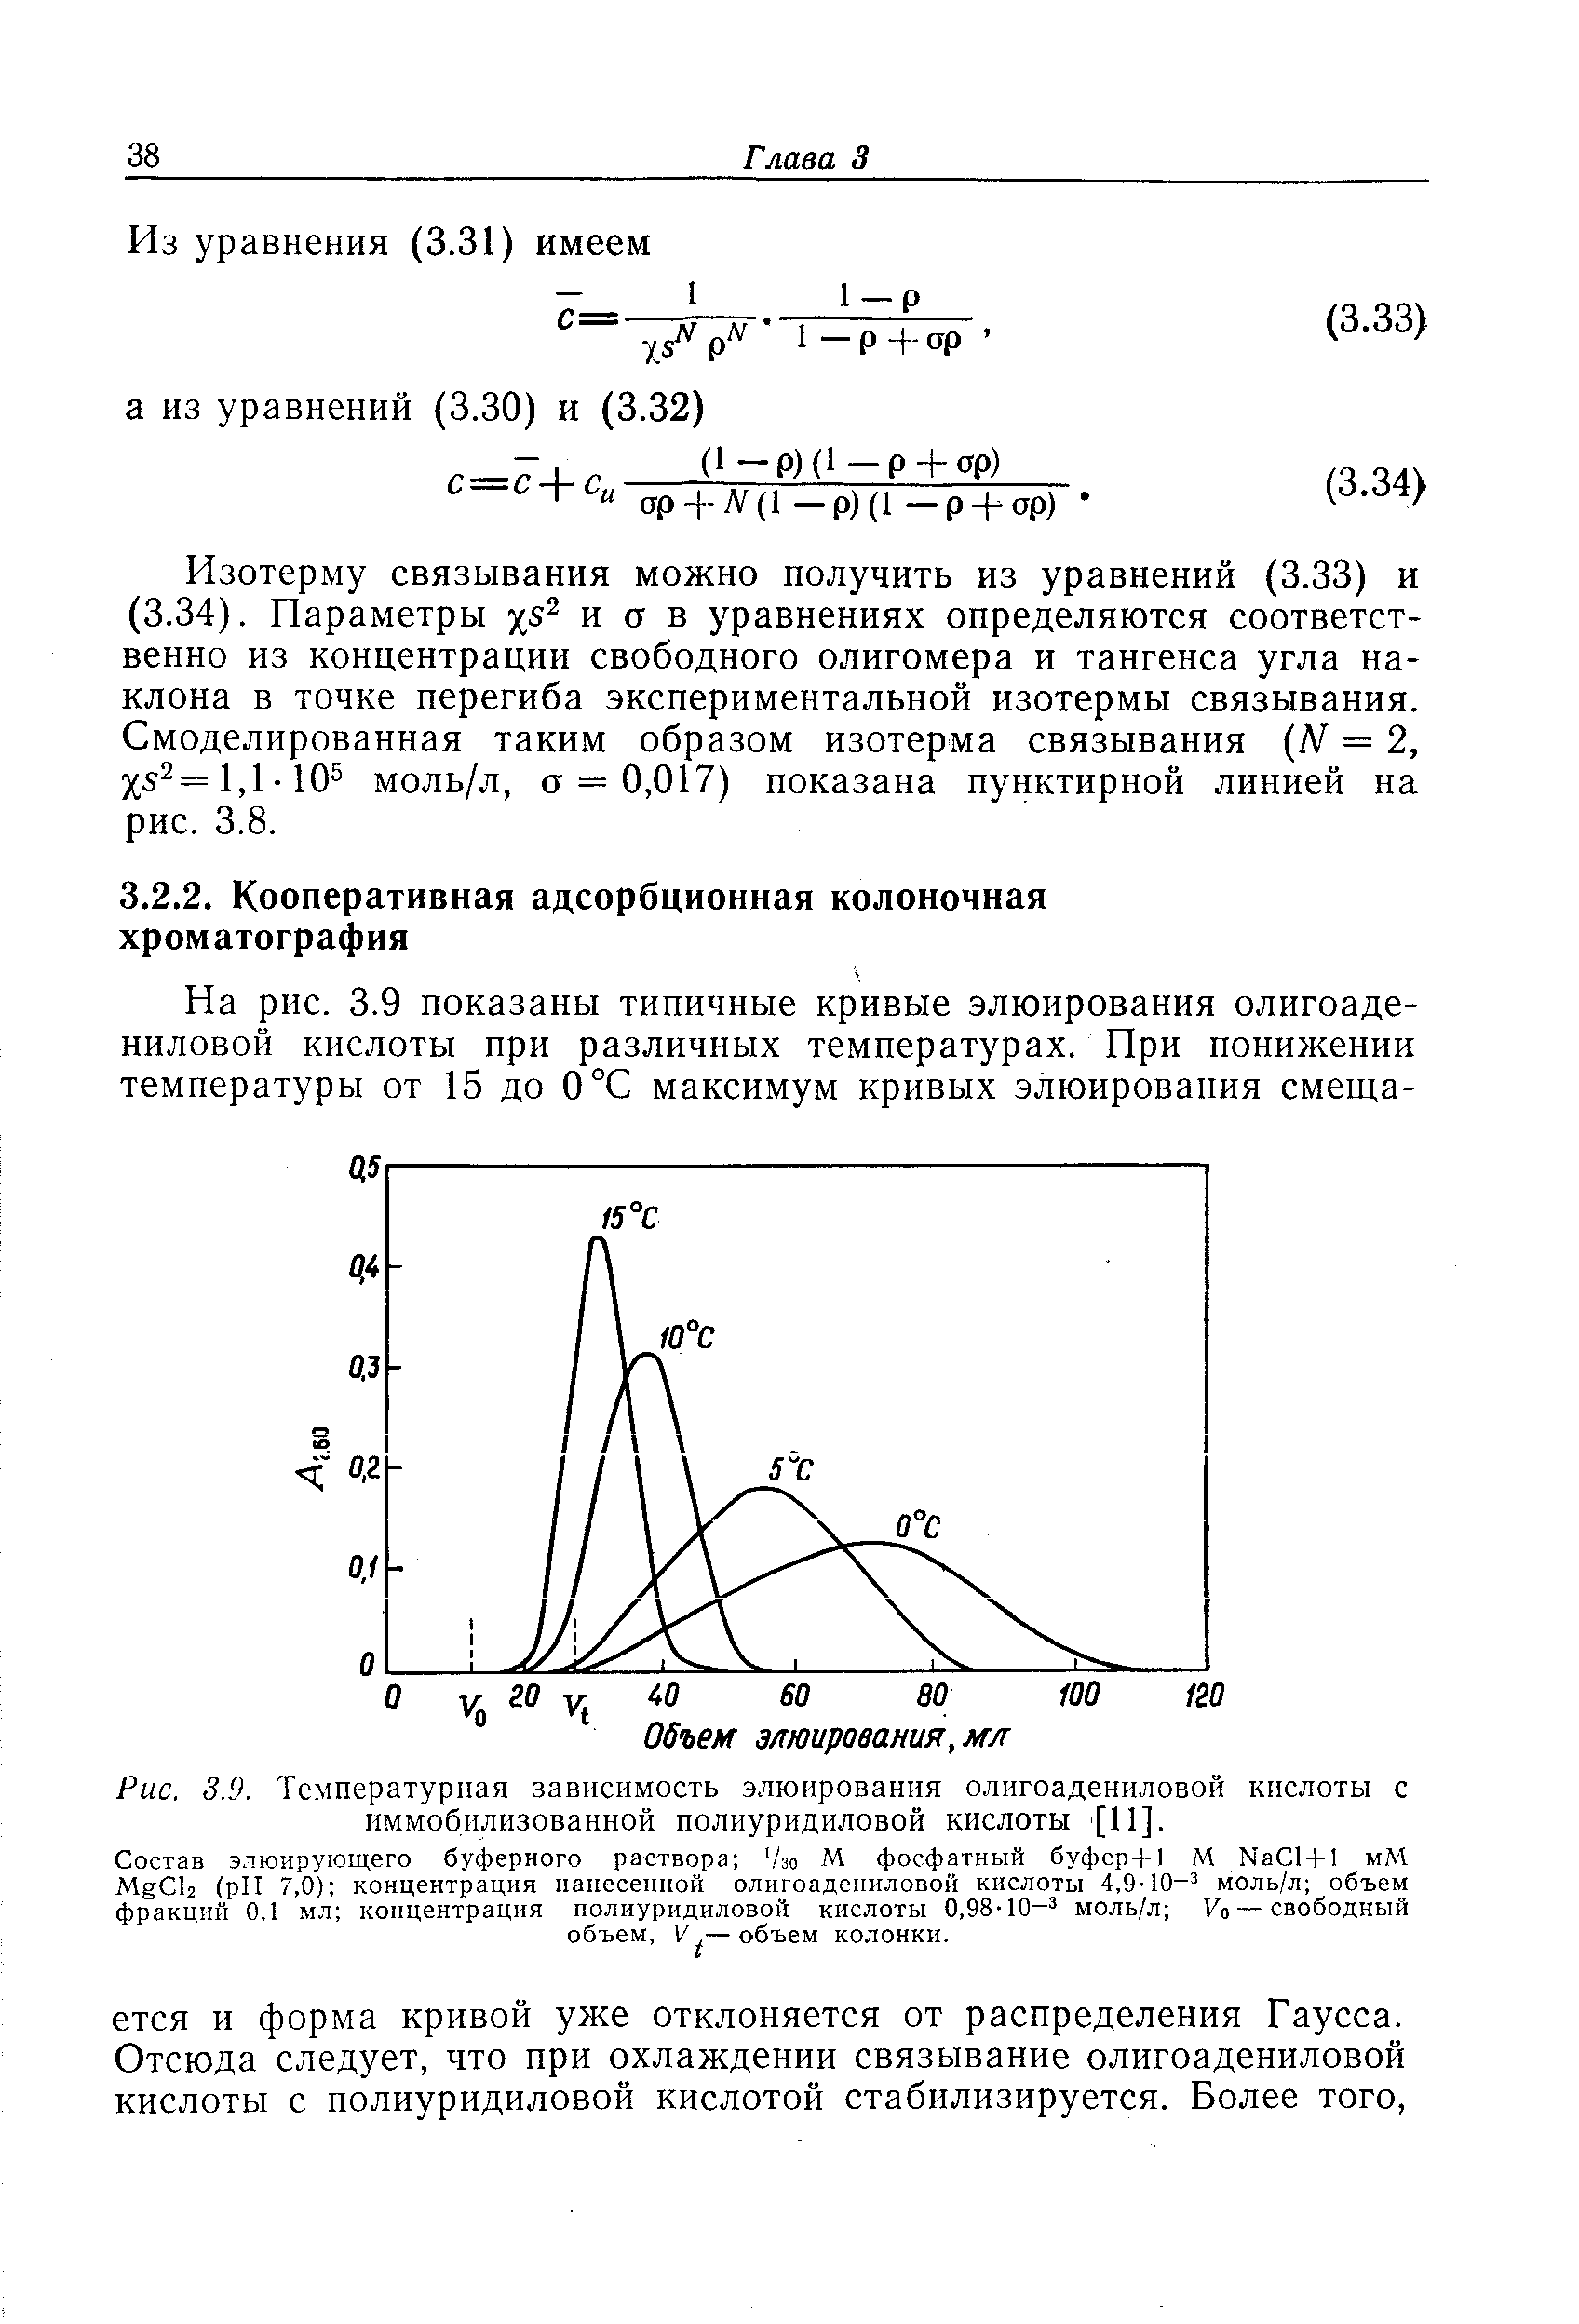 Изотерму связывания можно получить из уравнений (3.33) и (3.34). Параметры и а в уравнениях определяются соответственно из концентрации свободного олигомера и тангенса угла наклона в точке перегиба экспериментальной изотермы связывания. Смоделированная таким образом изотерма связывания (Л = 2, Х52=1,1-10 моль/л, а == 0,017) показана пунктирной линией на рис. 3.8.